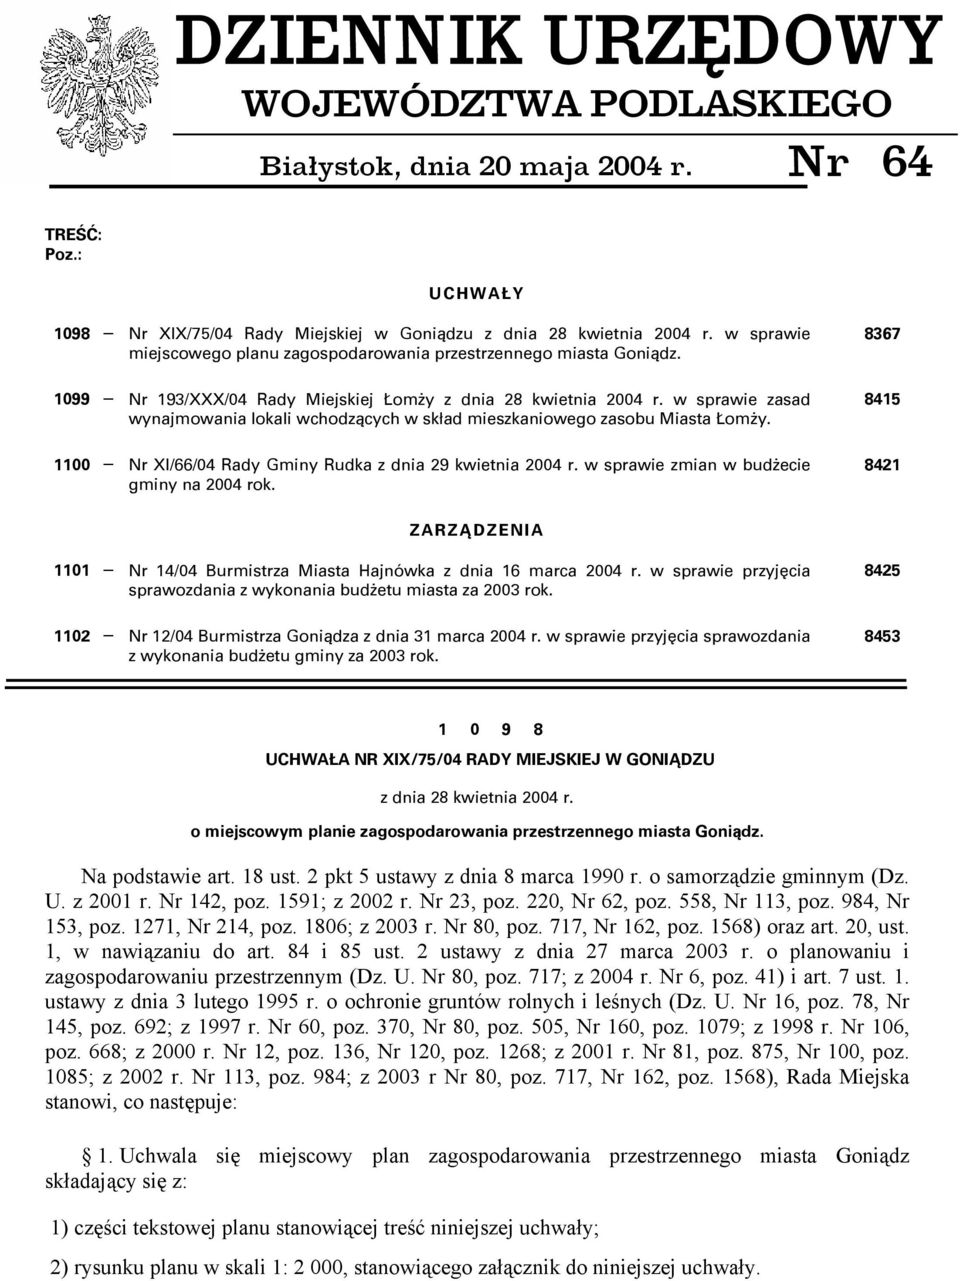 w sprawie zasad wynajmowania lokali wchodzących w skład mieszkaniowego zasobu Miasta Łomży. 1100 Nr XI/66/04 Rady Gminy Rudka z dnia 29 kwietnia 2004 r. w sprawie zmian w budżecie gminy na 2004 rok.